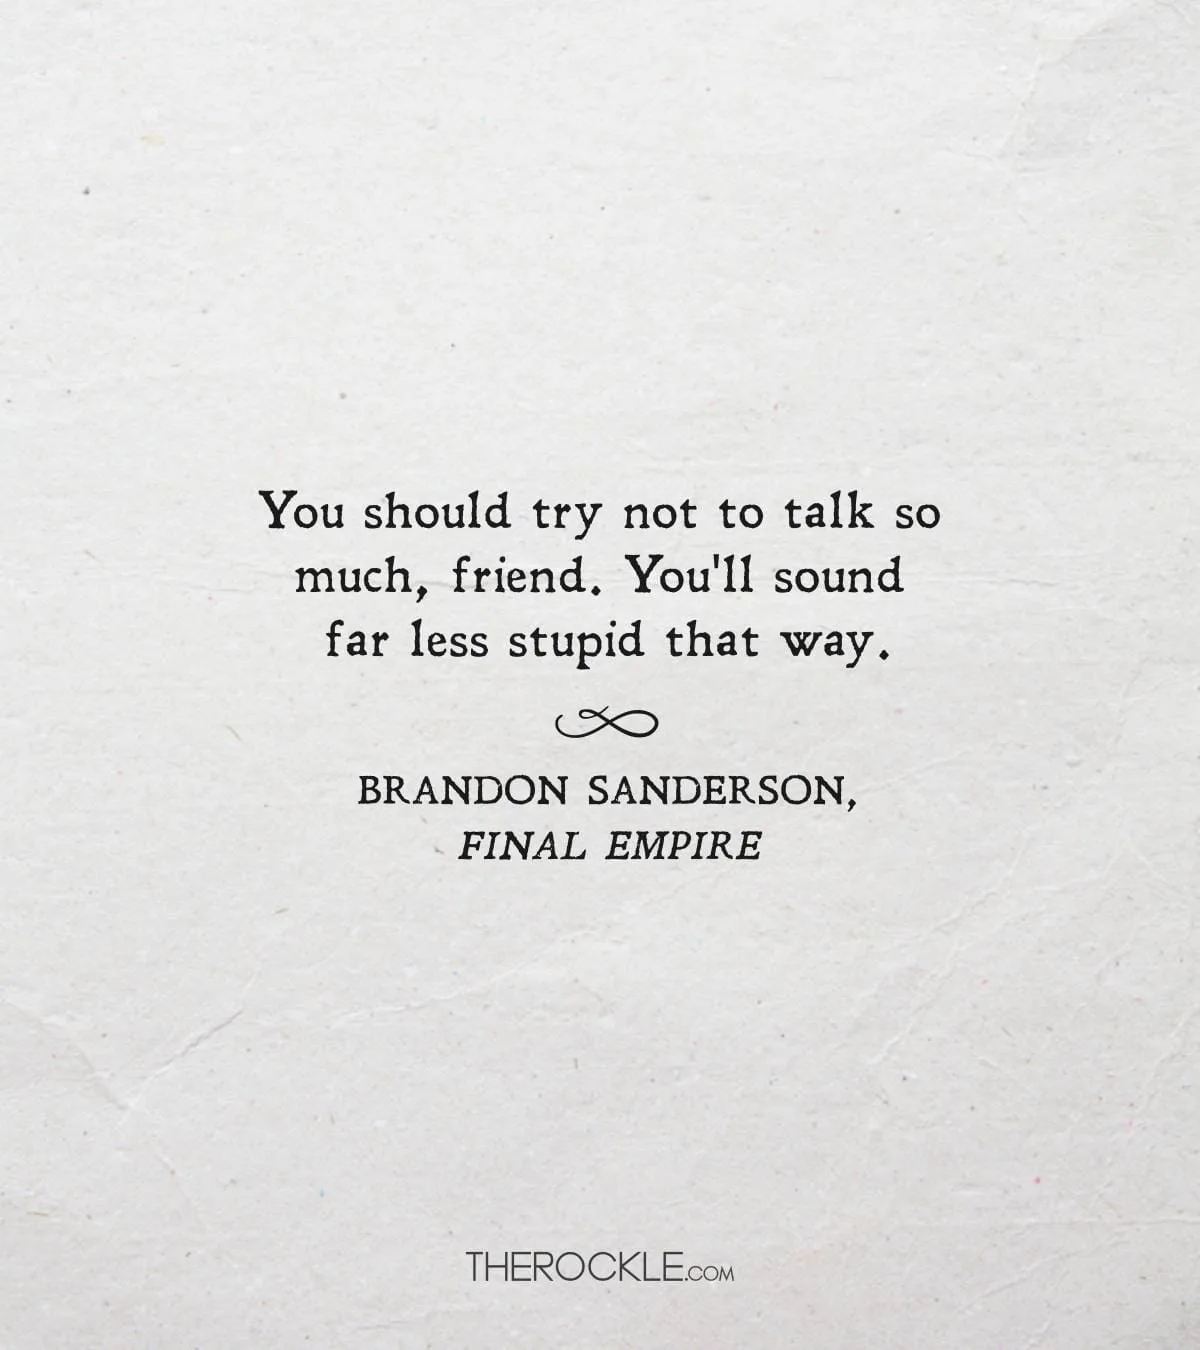 Funny quote from Brandon Sanderson's Final Empire 